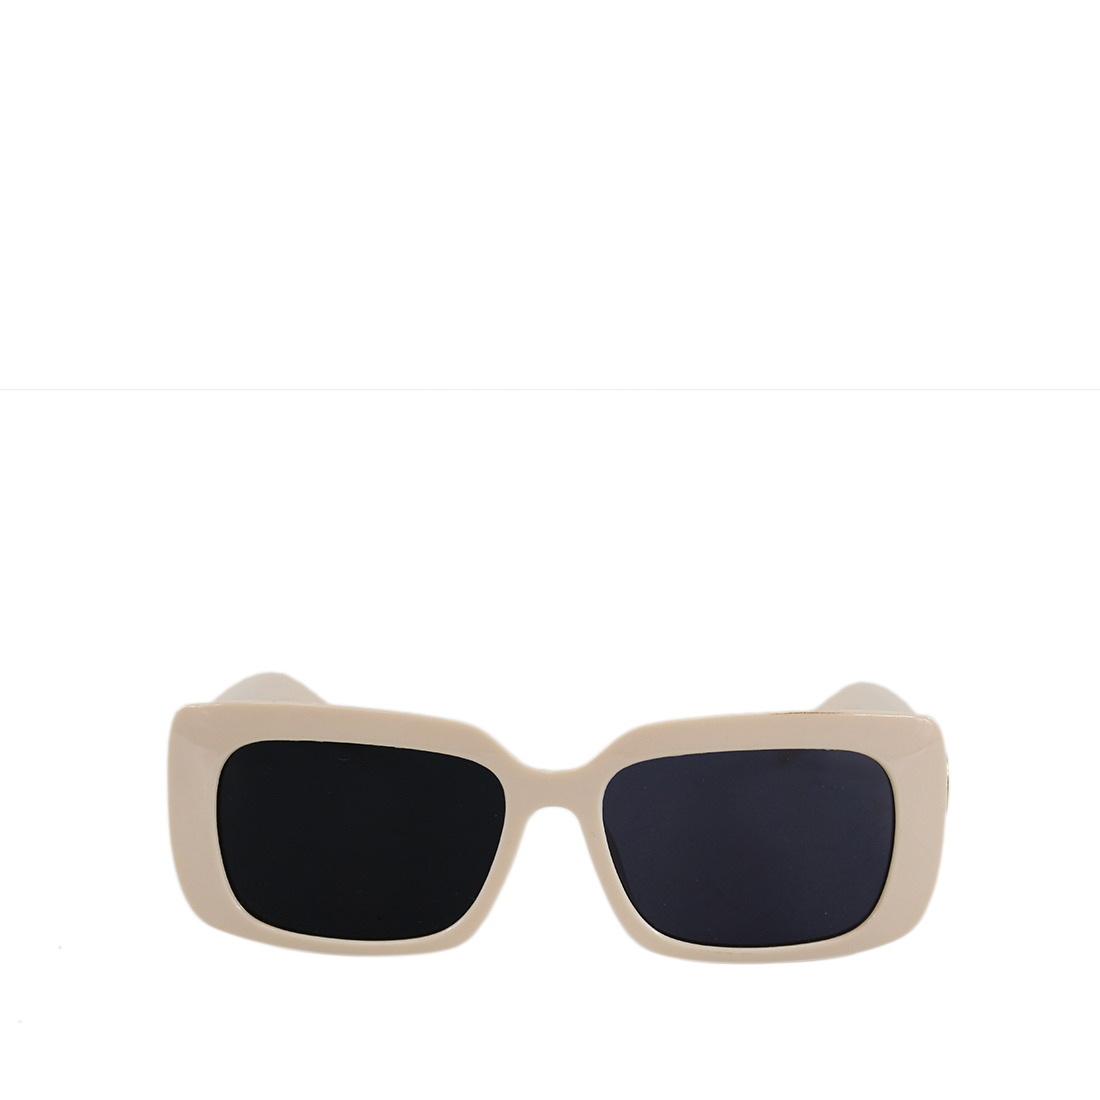 * Mid square sunglasses design